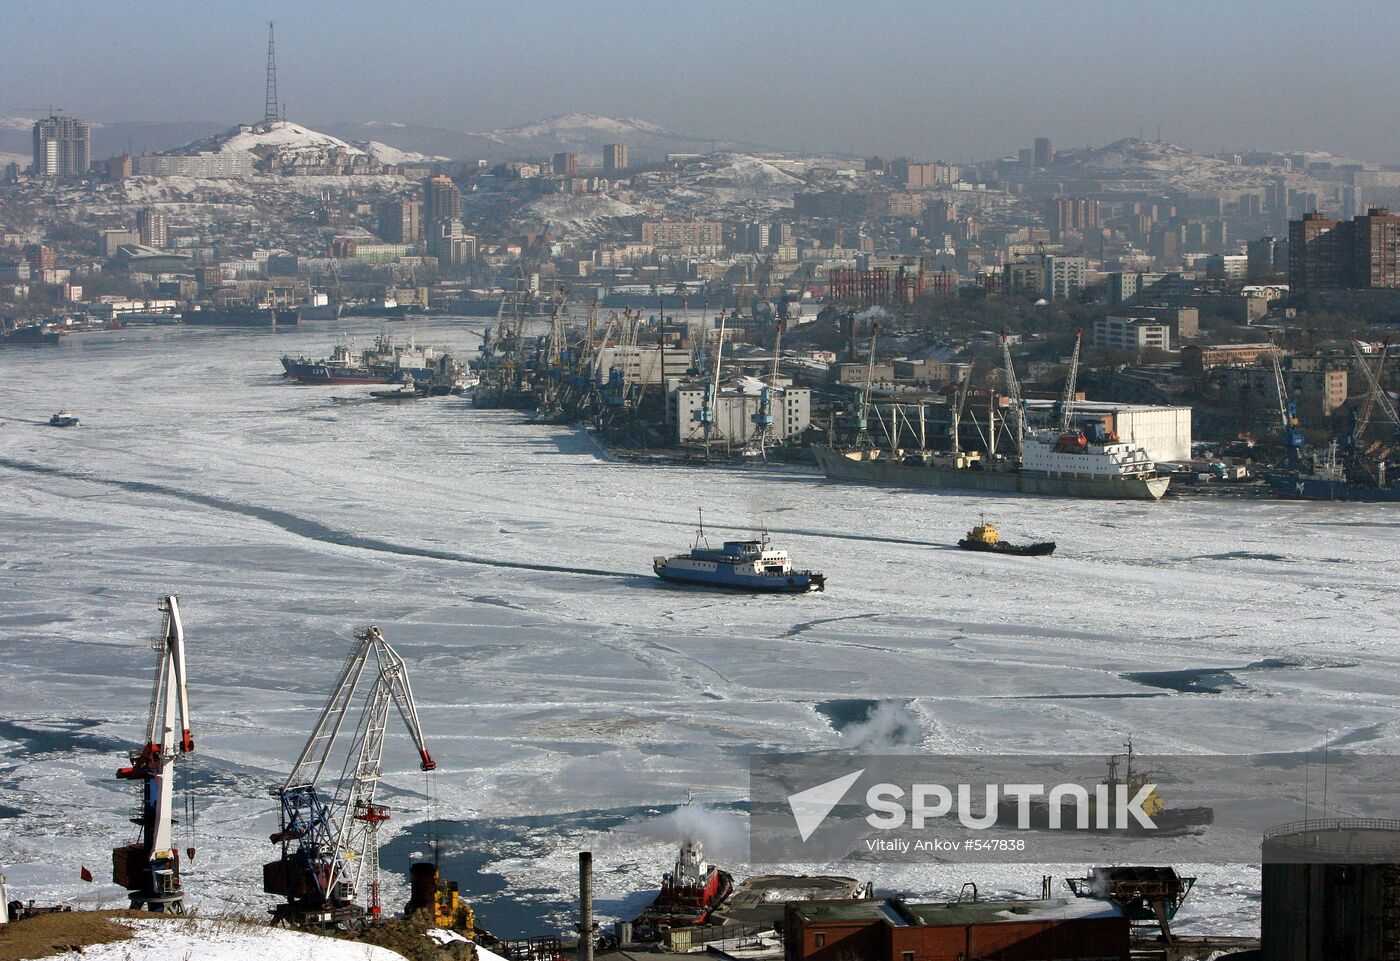 Vladivostok Zolotoy Rog Bay freezes